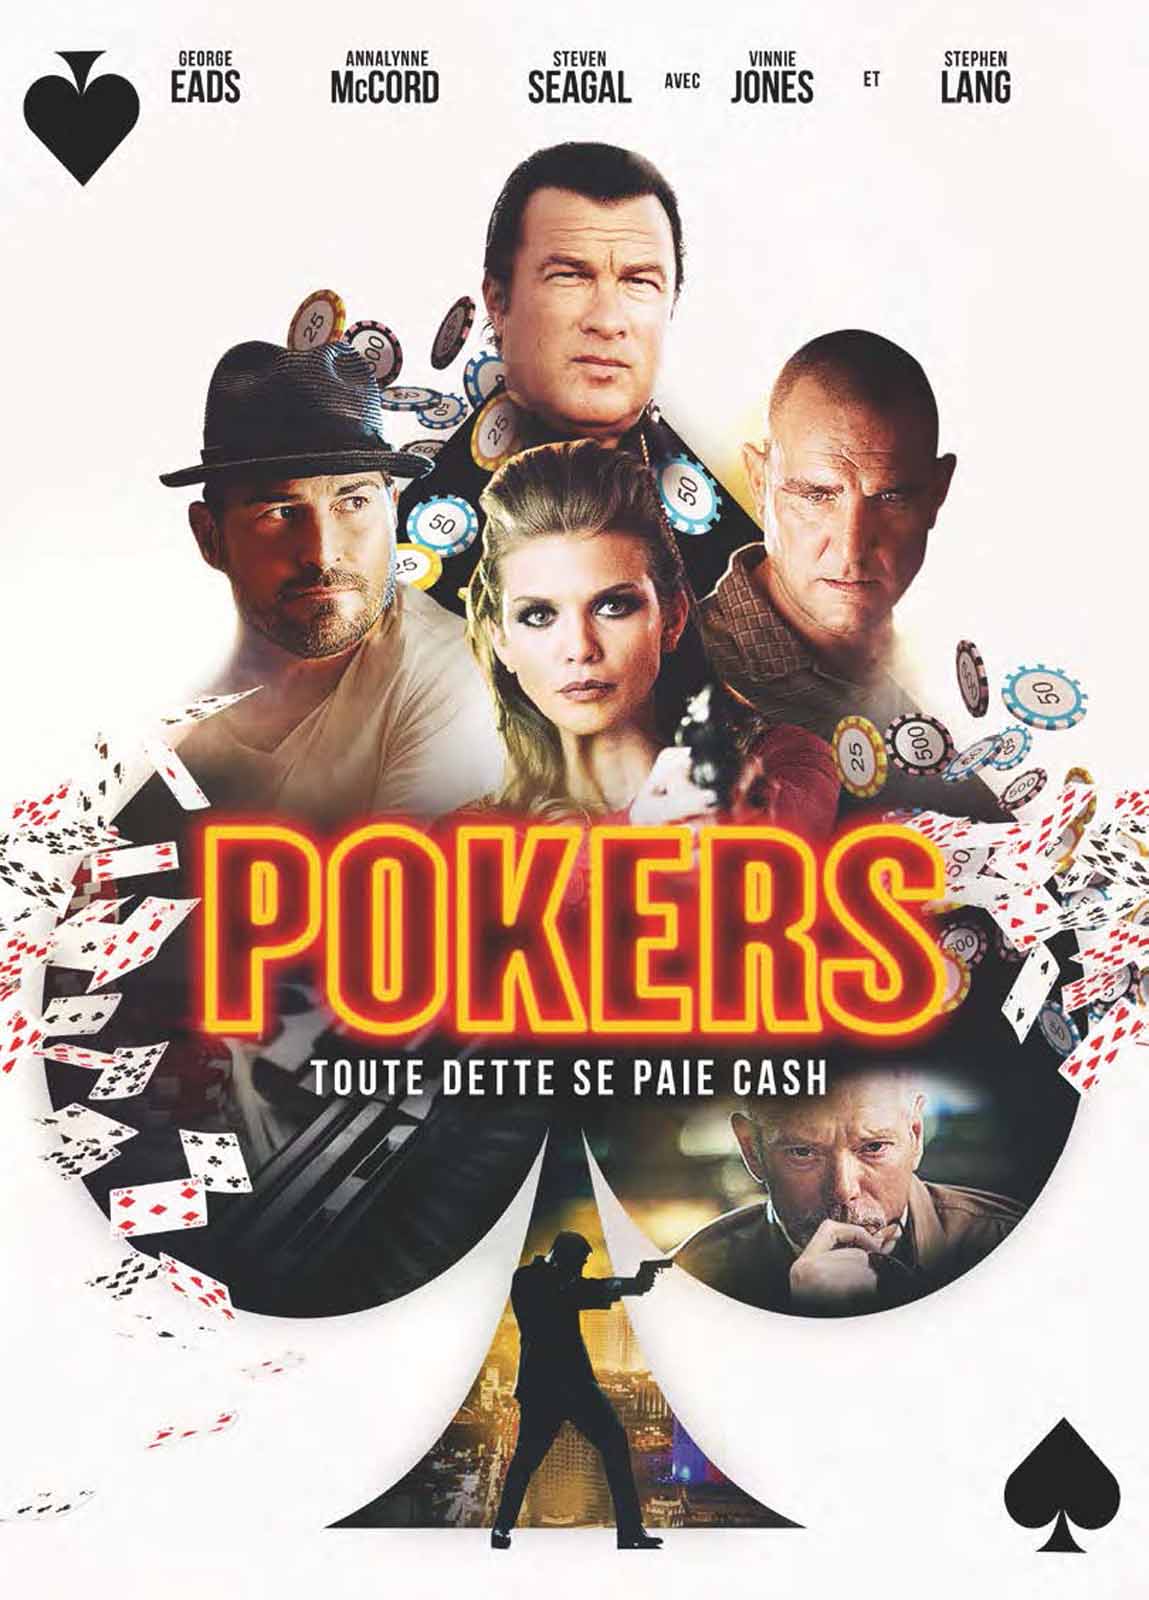 poker 2 vs poker 3